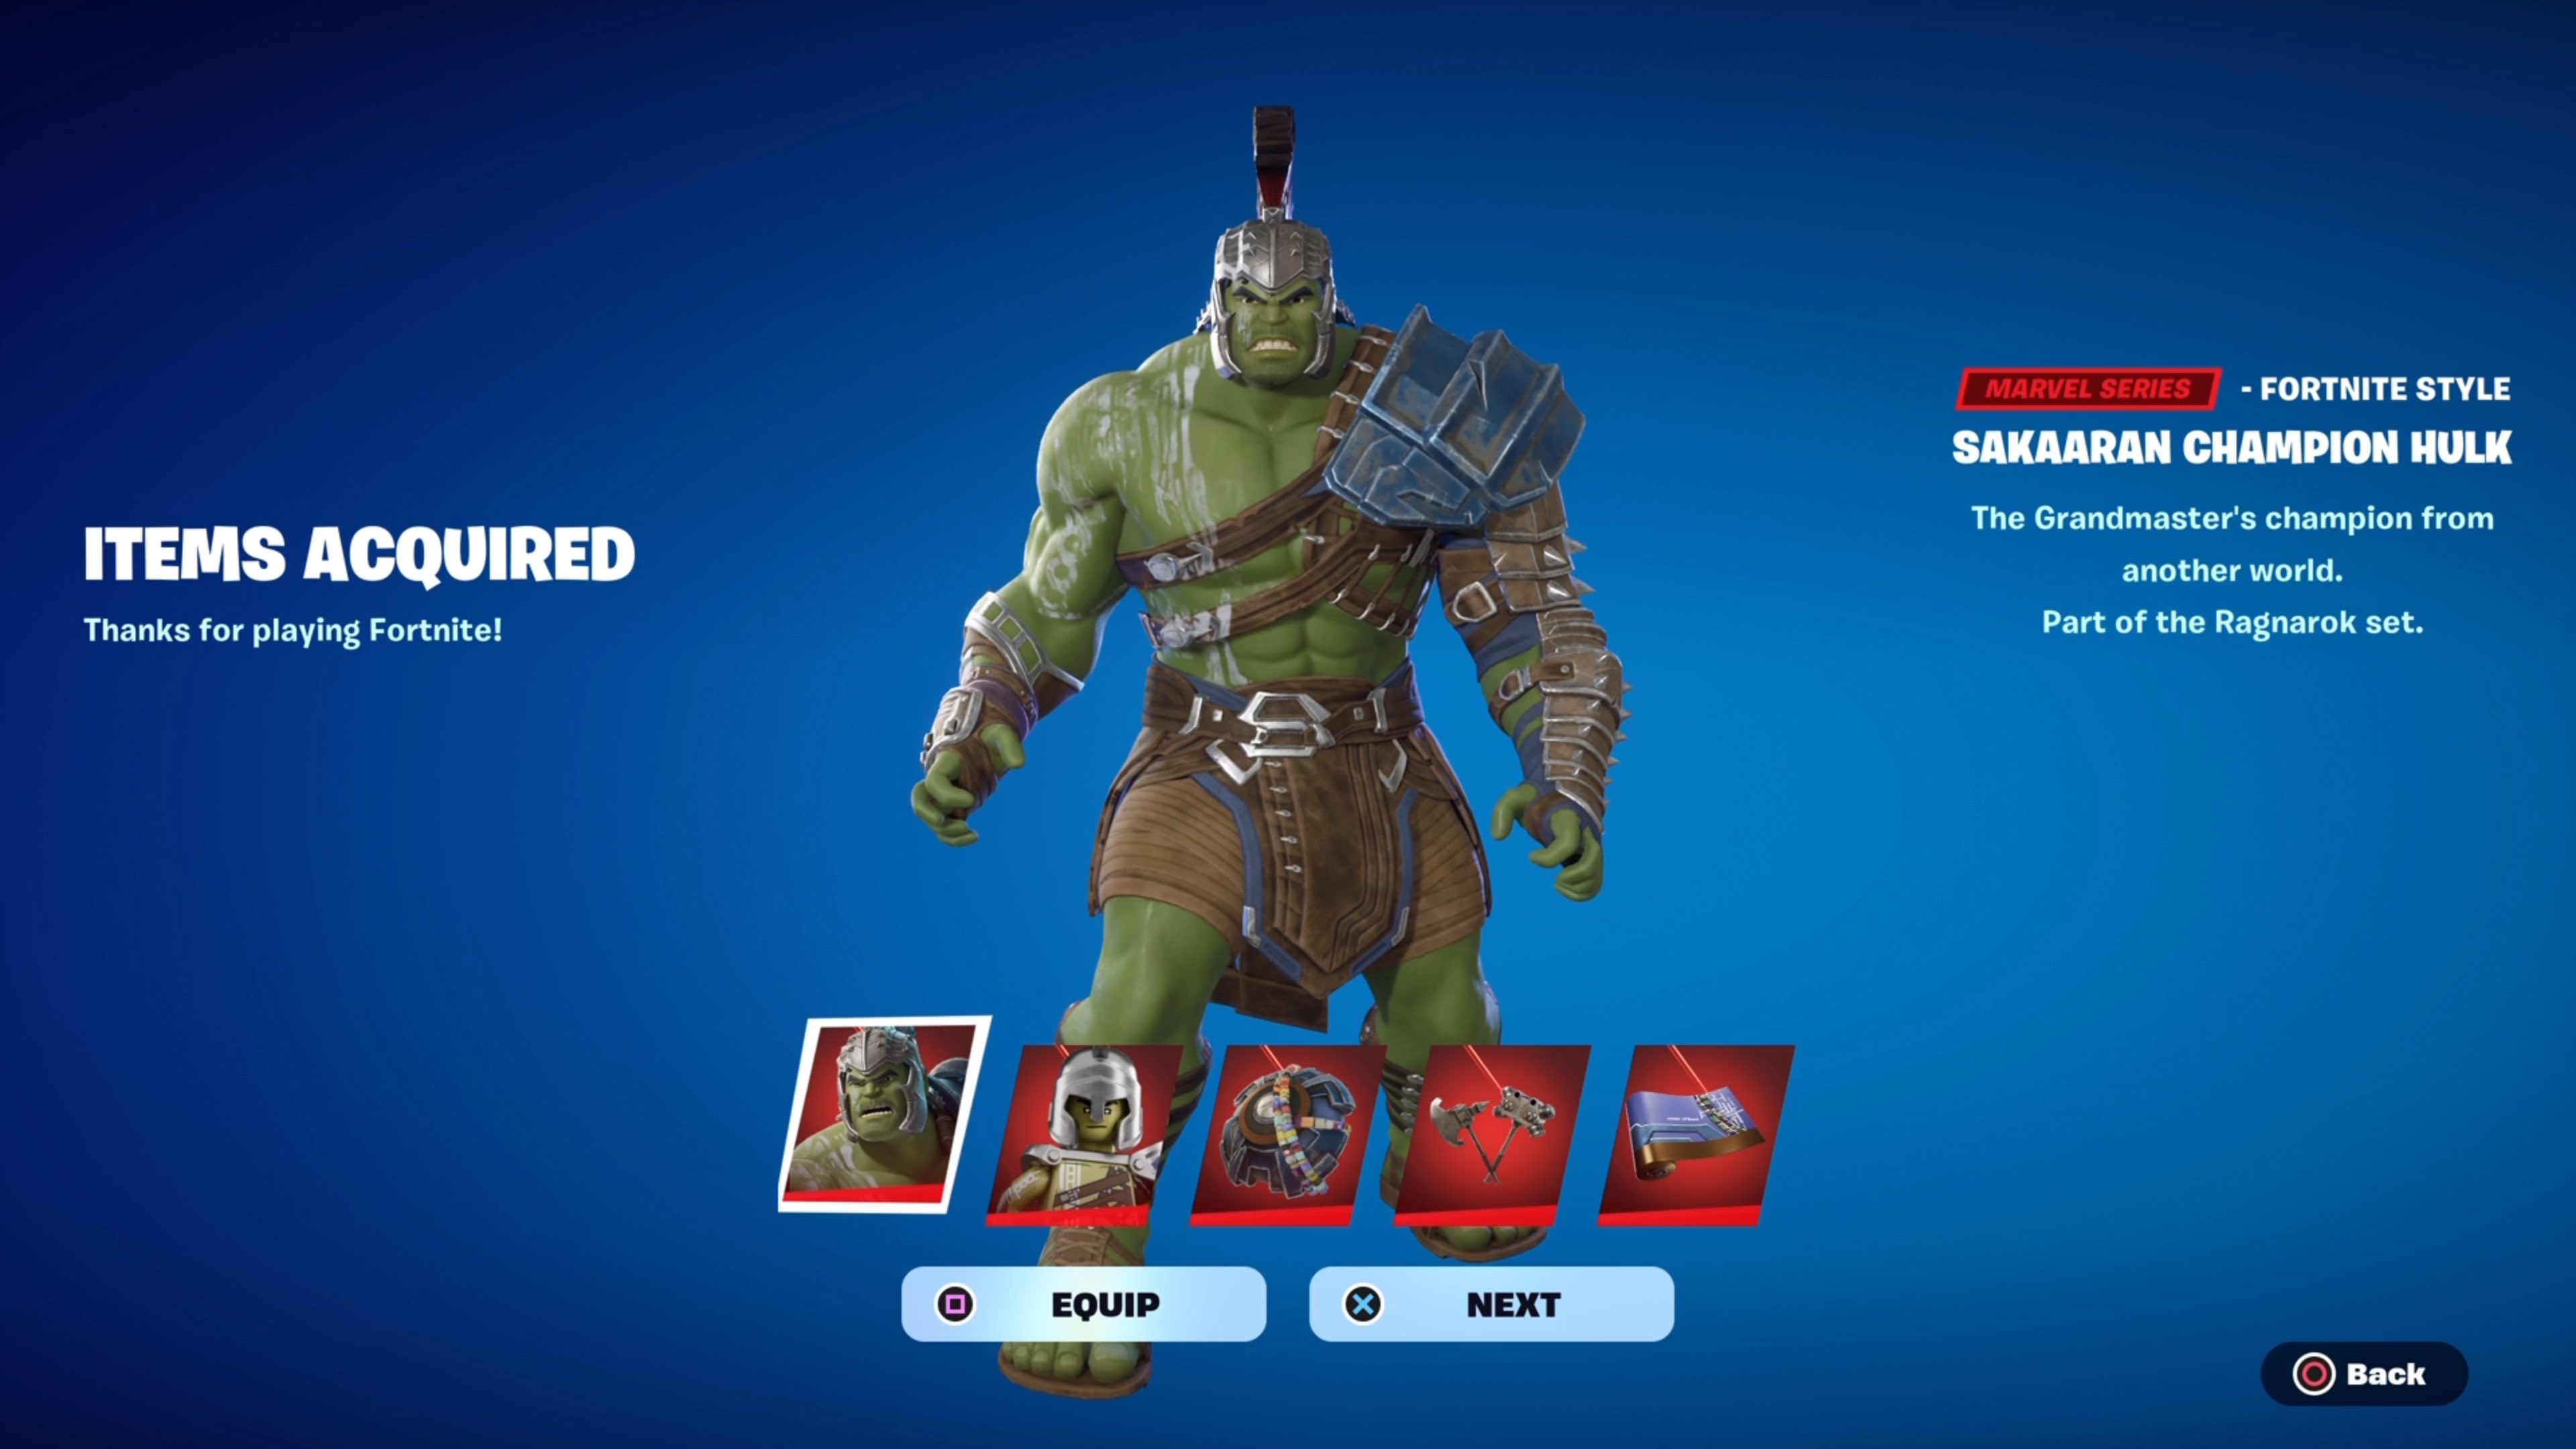 Sakaaran Champion Hulk Fortnite wallpaper